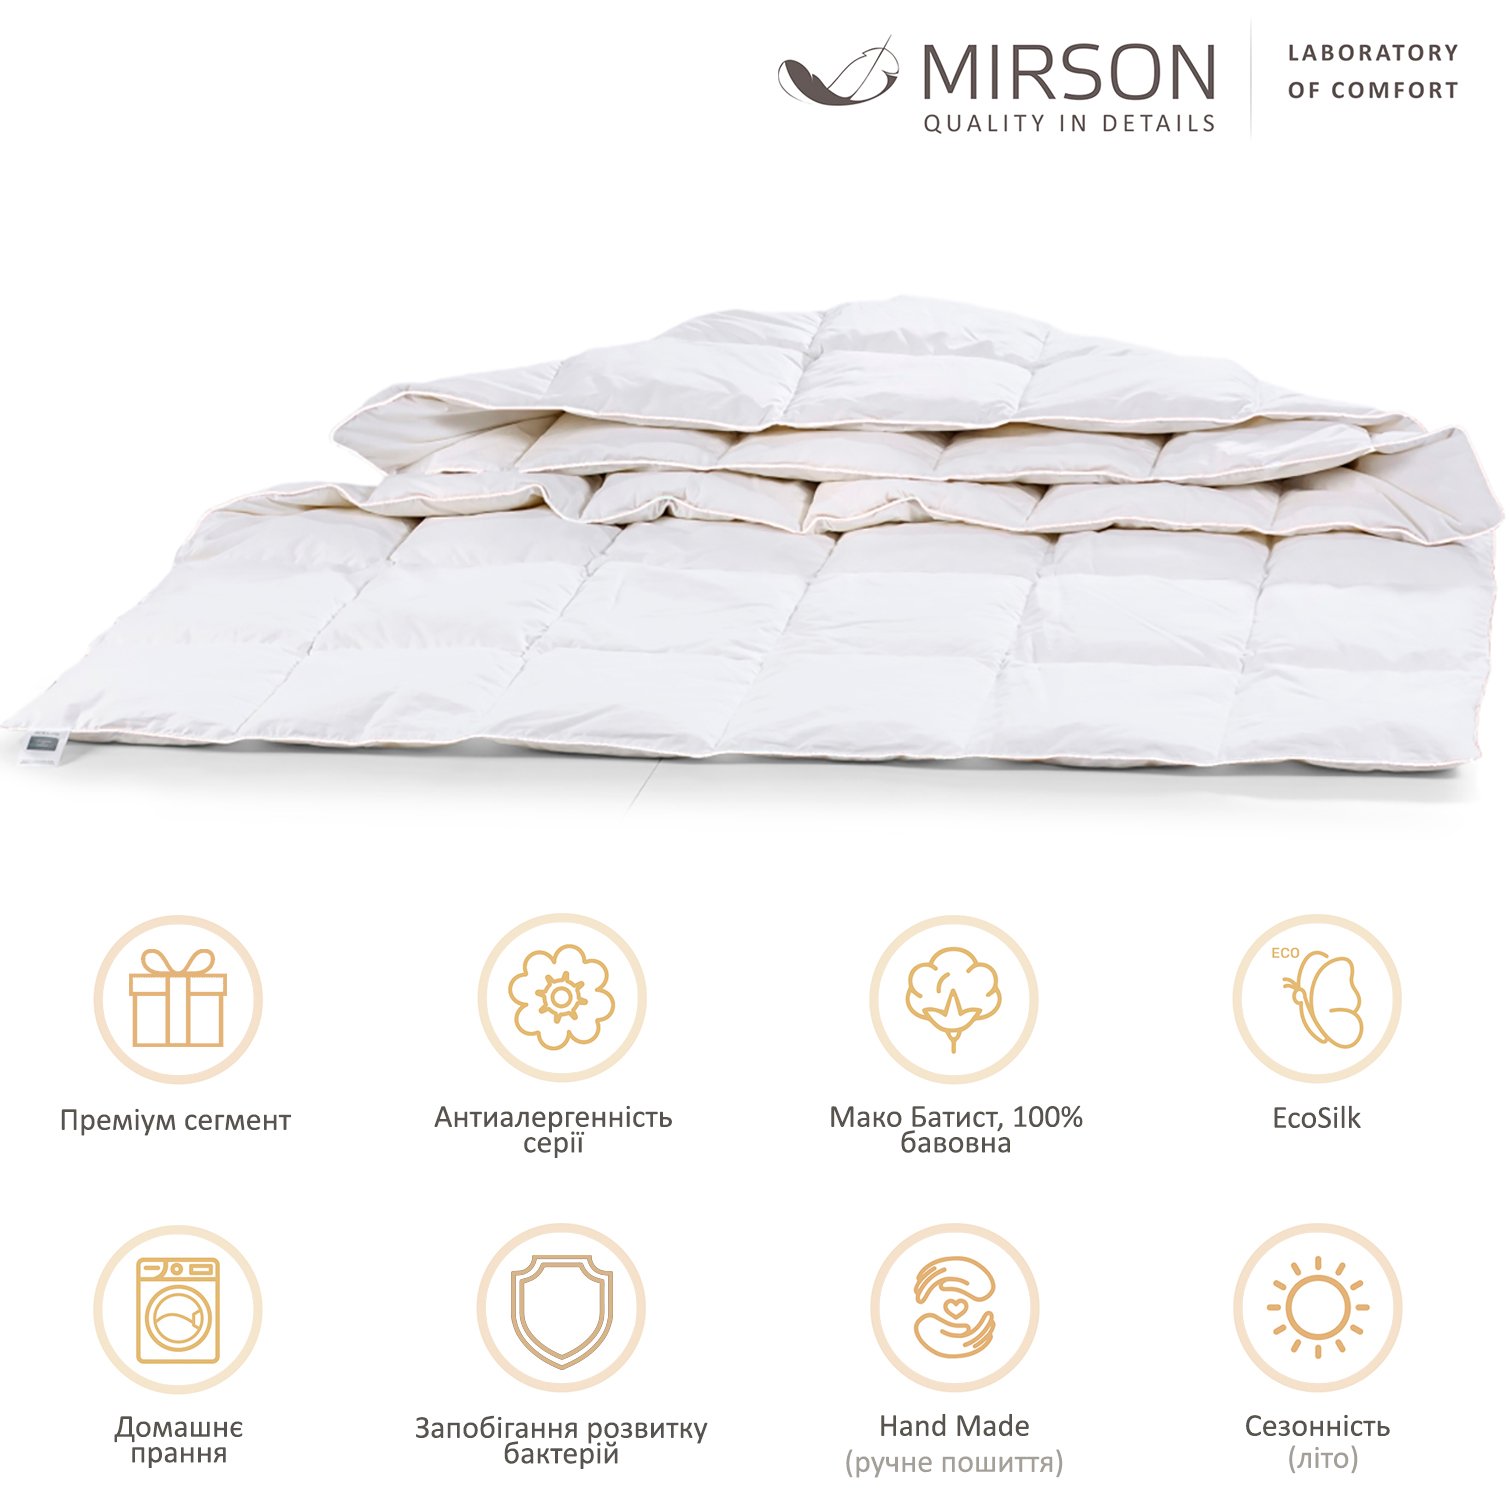 Одеяло антиаллергенное MirSon Luxury Exclusive EcoSilk №1315, летнее, 220x240 см, белое (237054391) - фото 5